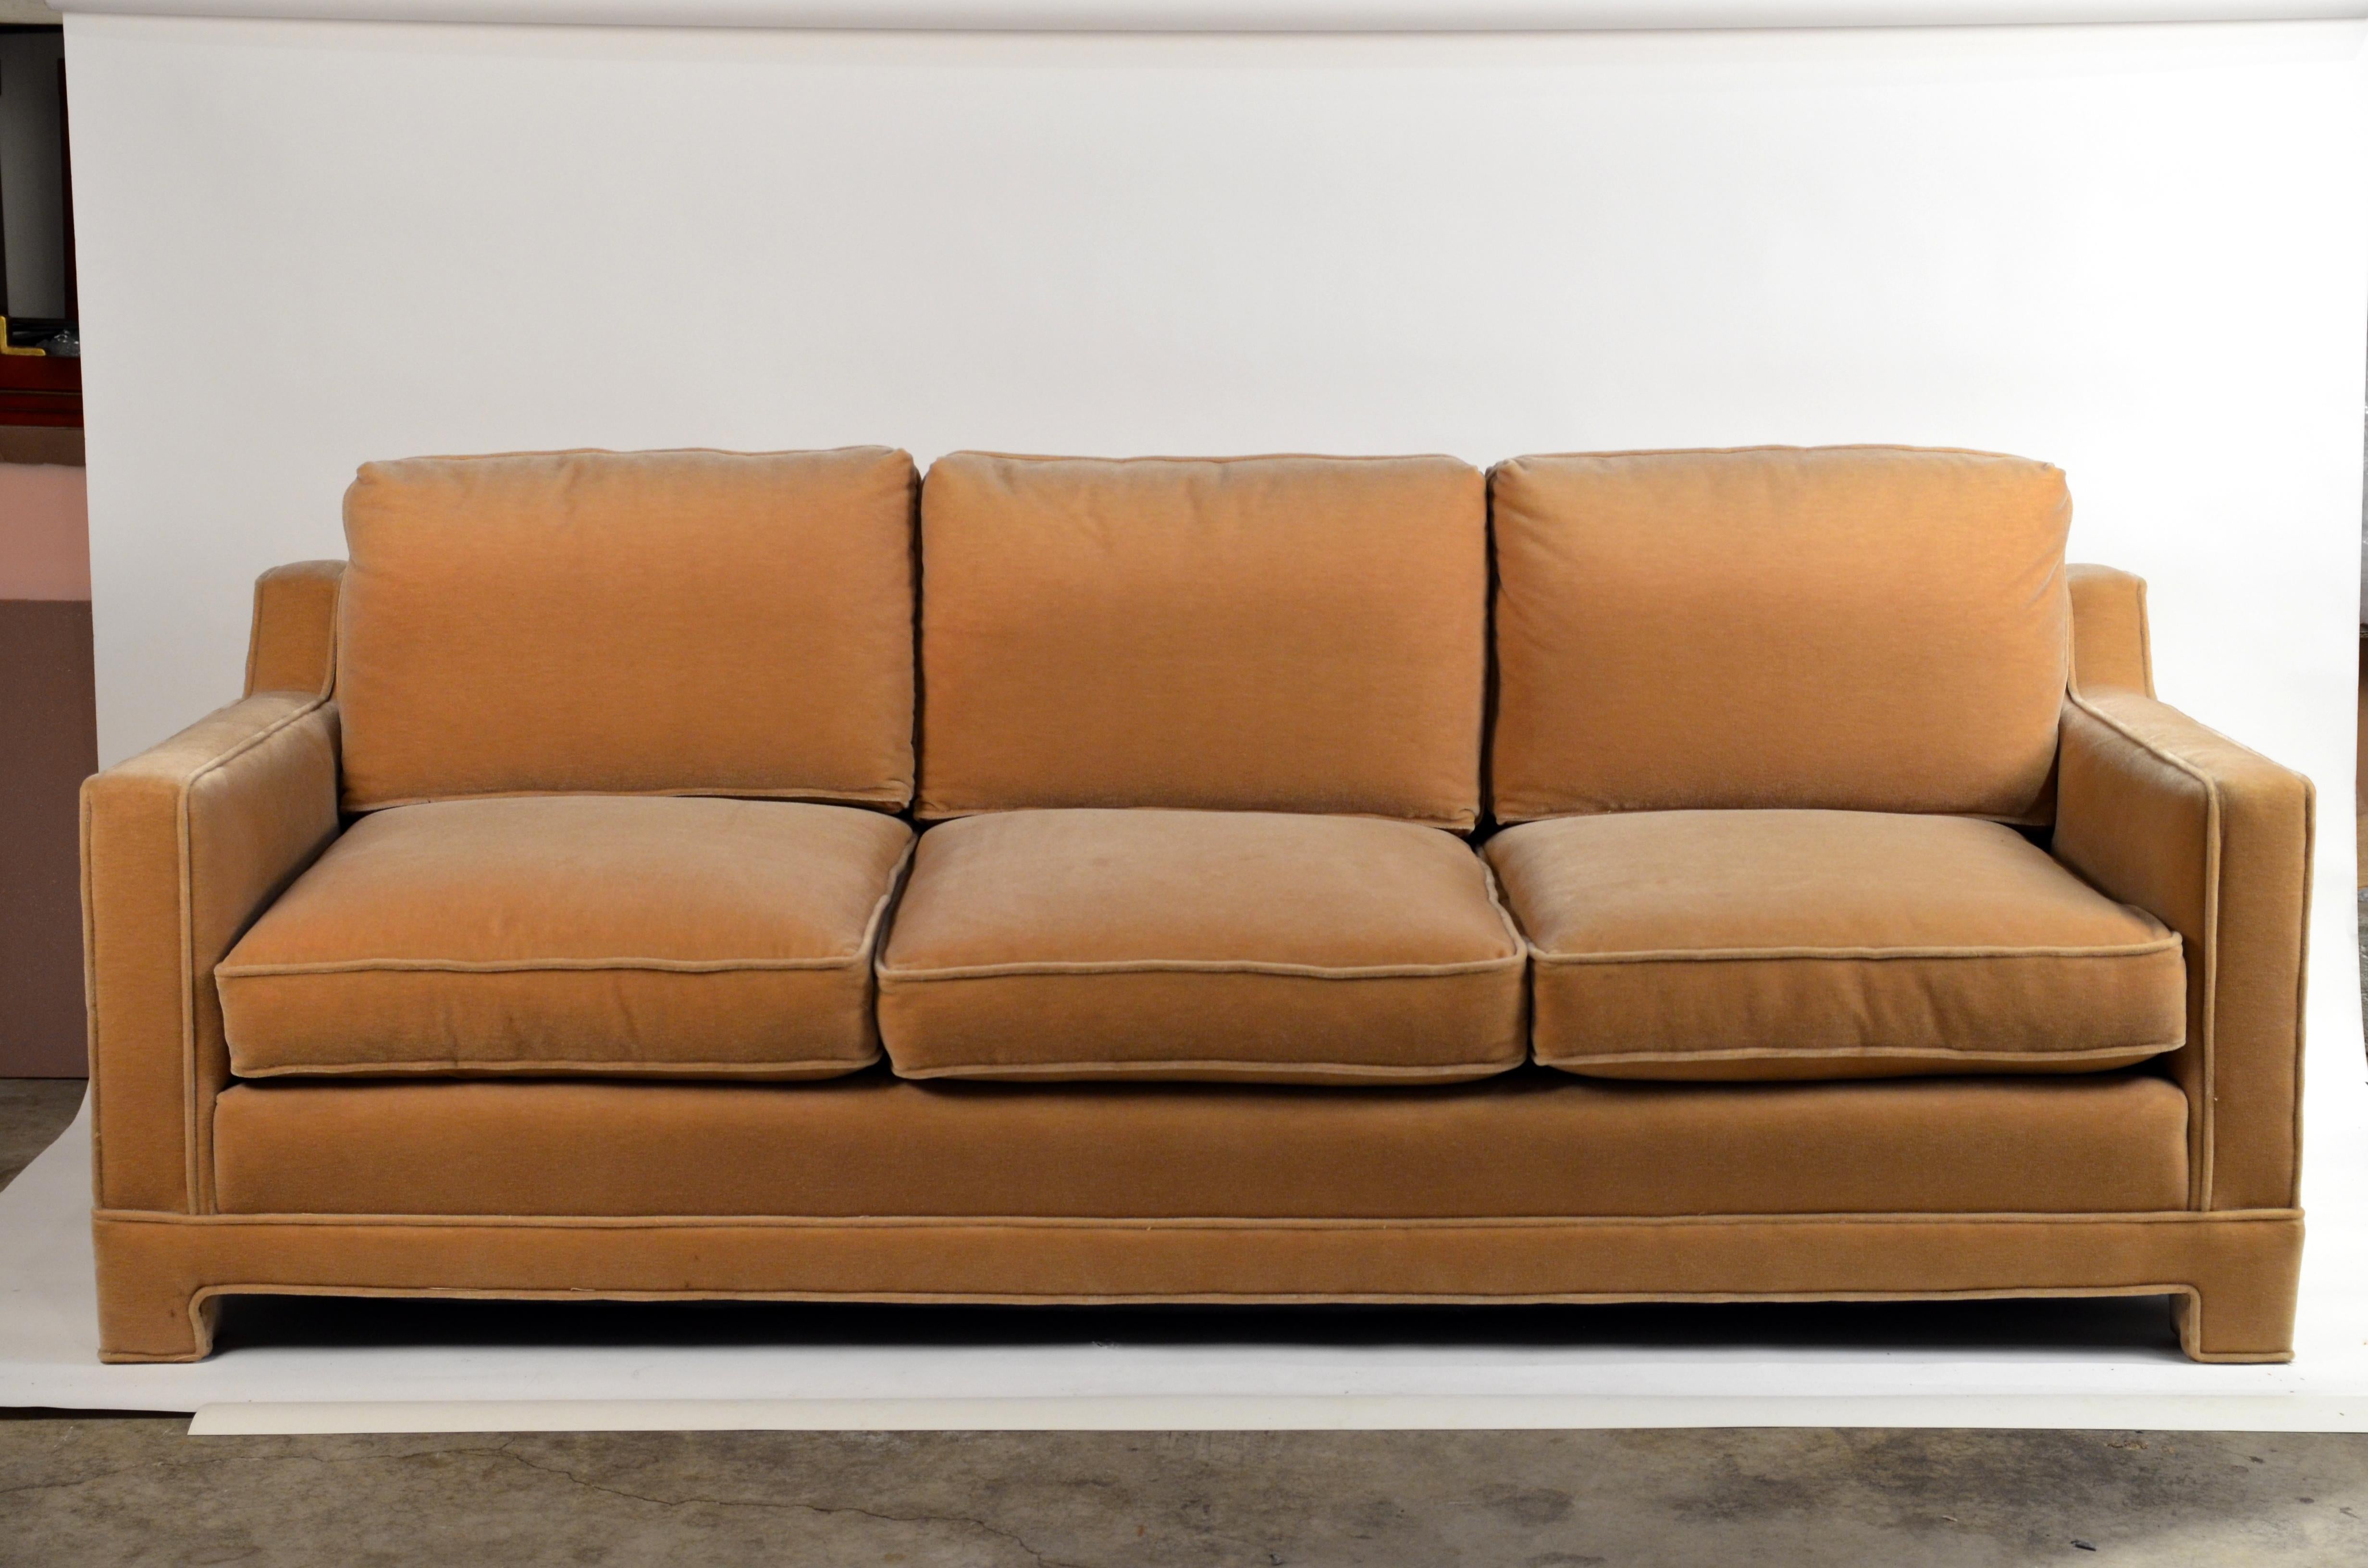 Le canapé 'Verneuil' est le dernier né de notre ligne exclusive Design Frères. Inspiré par l'esthétique Art Déco intemporelle de Jean-Michel Frank, il est construit selon les normes les plus élevées de confort et de durabilité et tapissé d'un chic